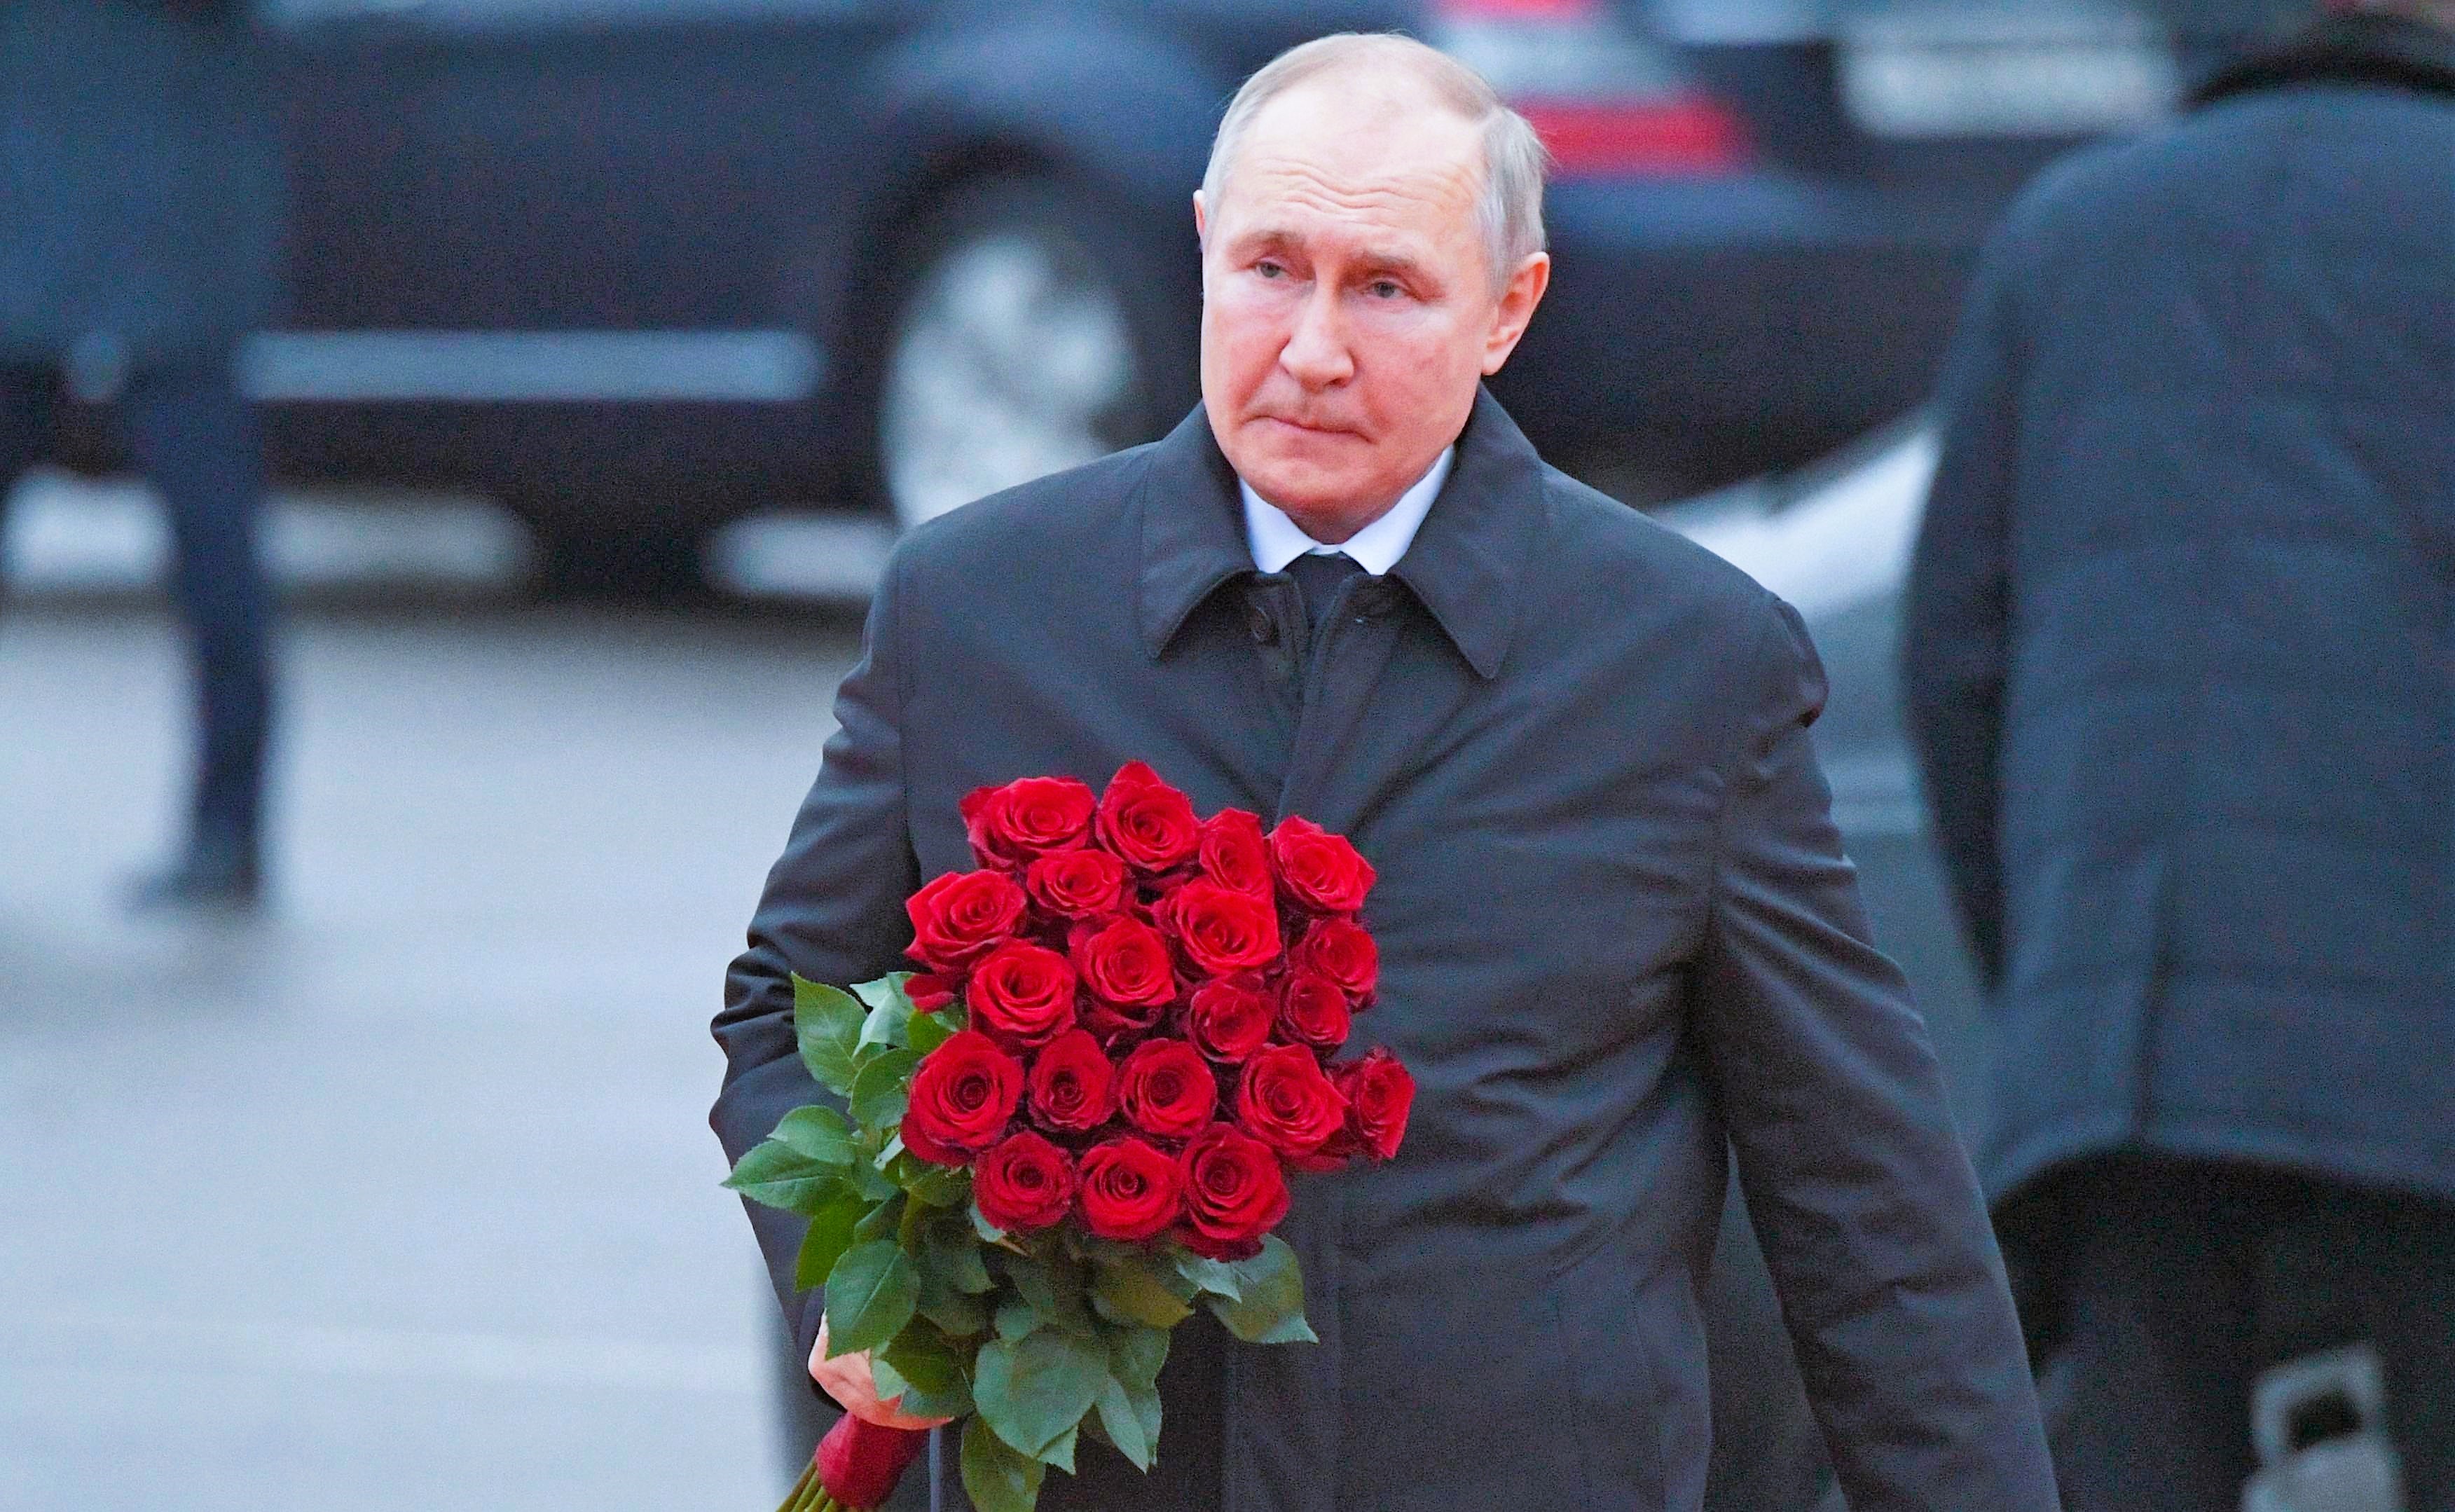 Panik bei Putin! - Russischer Präsident hat Angst um sein Leben, ist er in Moskau nicht mehr sicher?